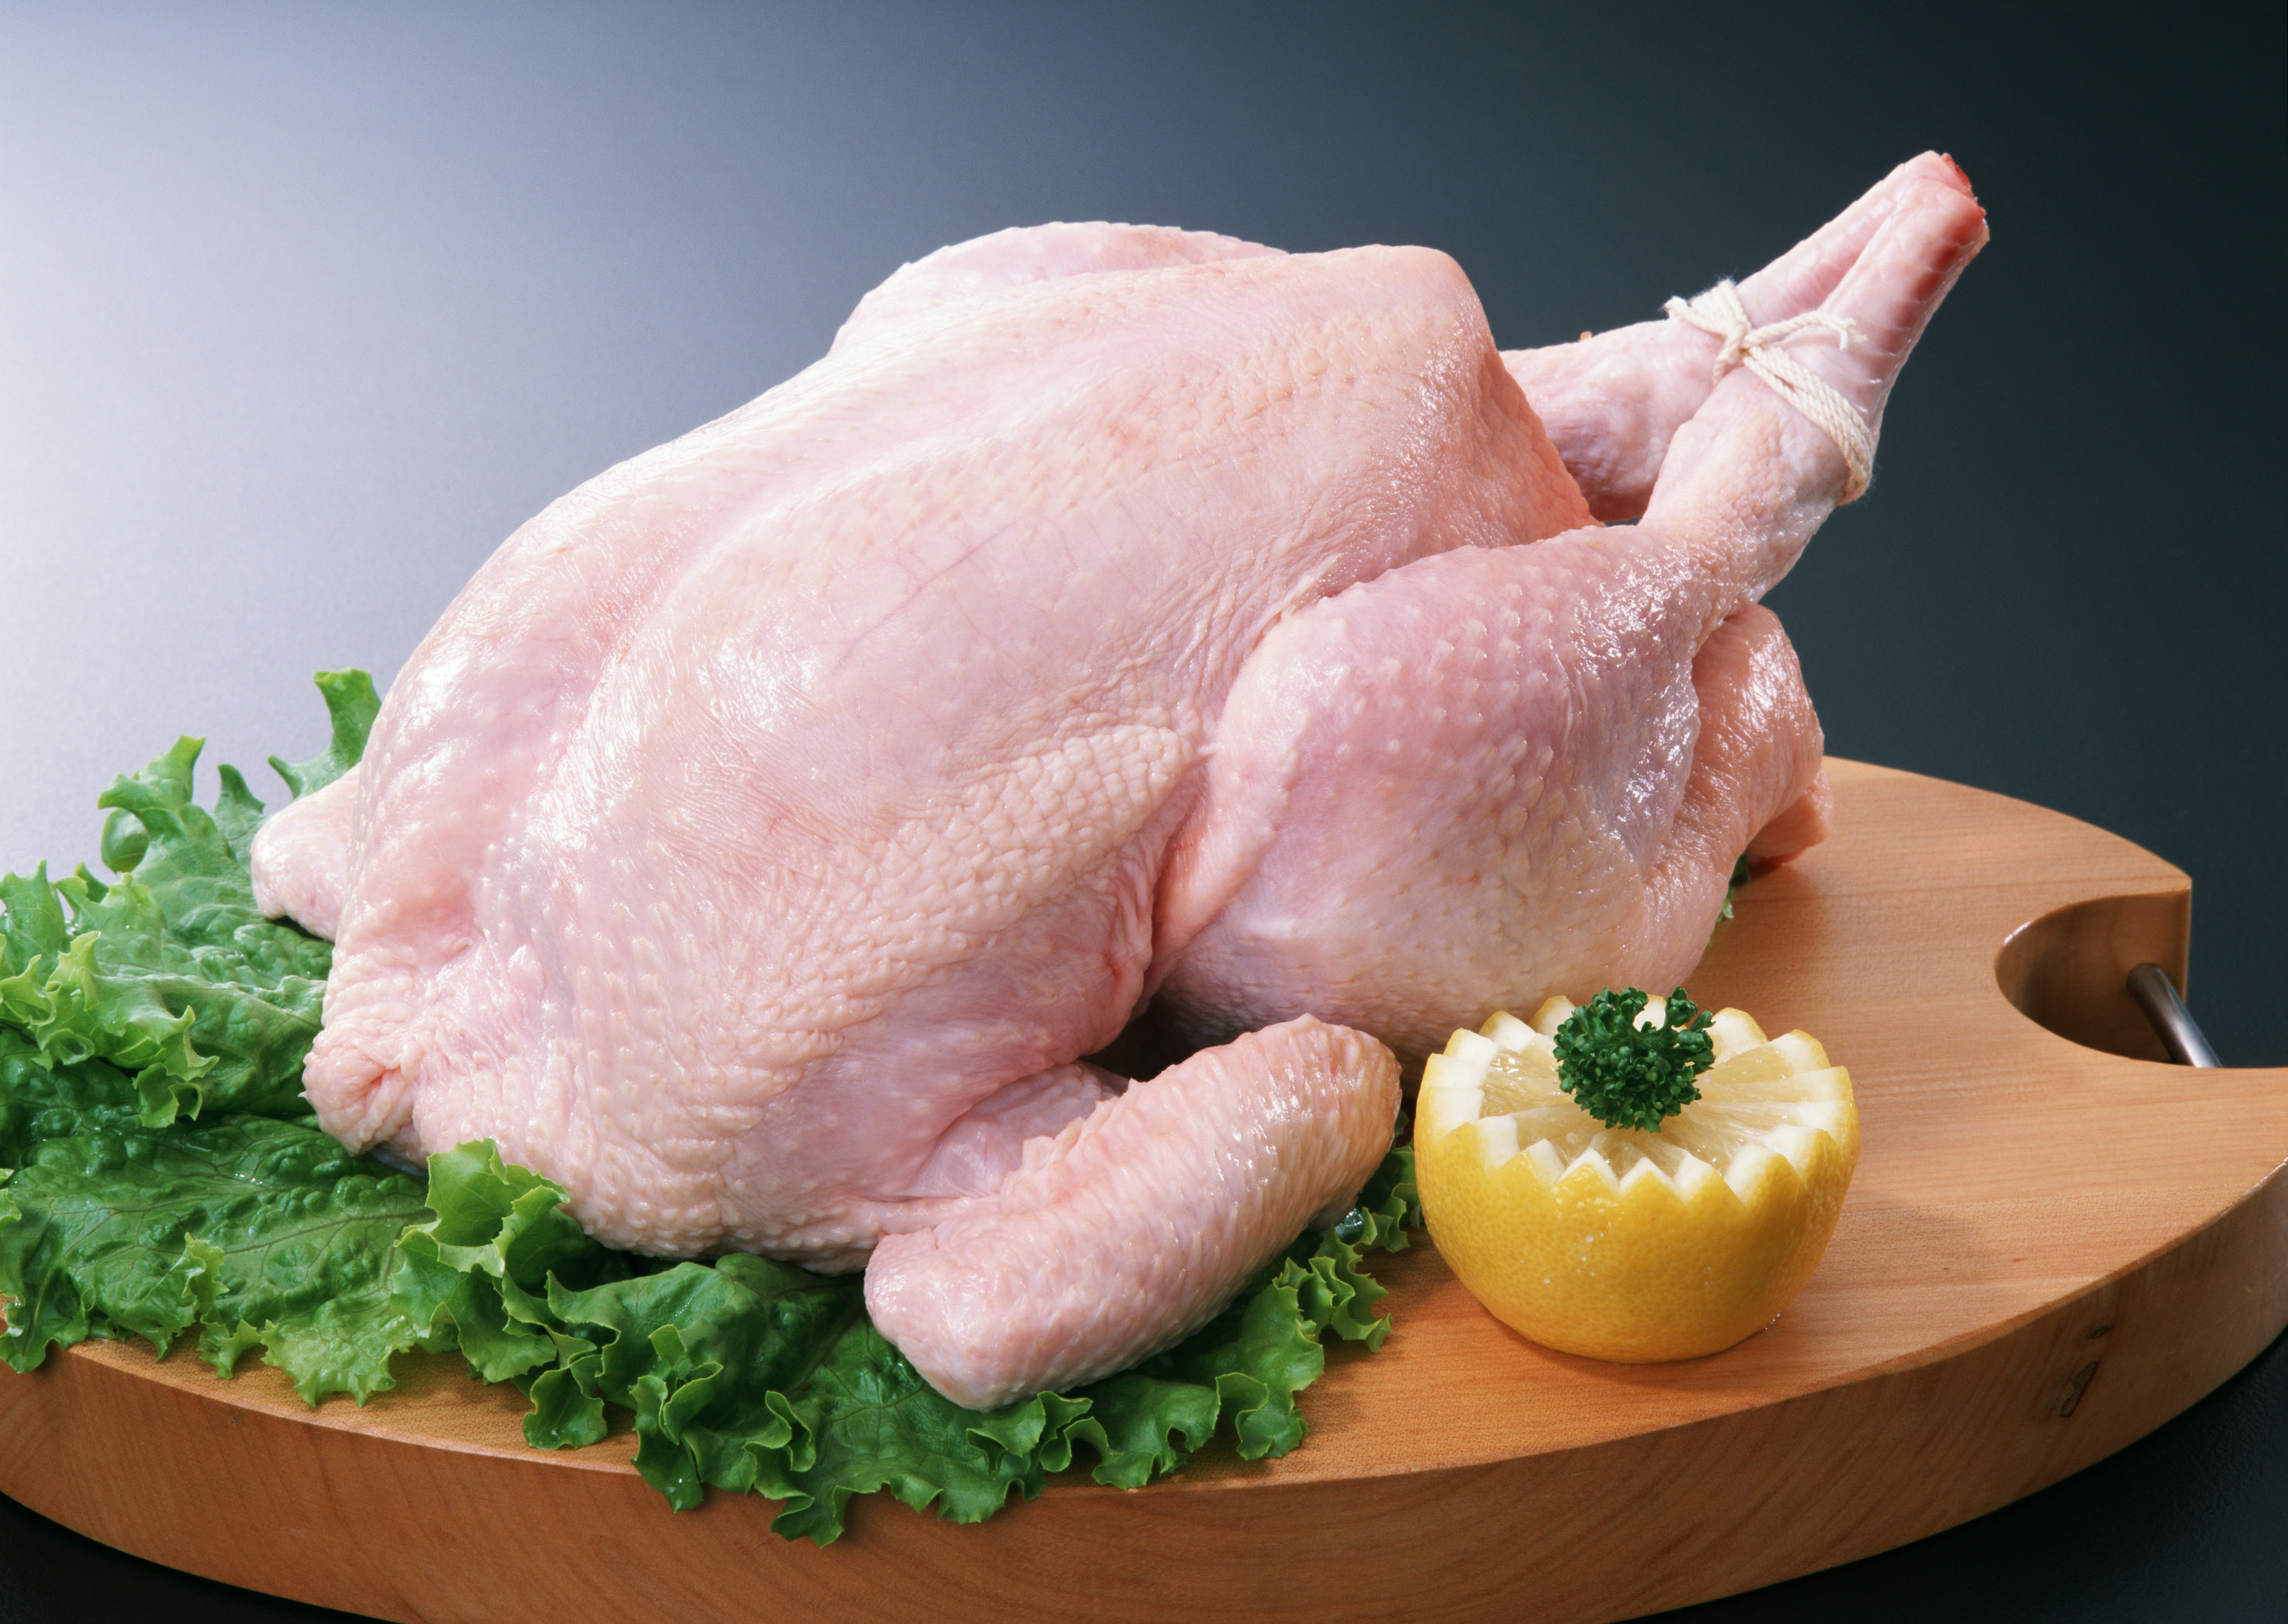 قیمت گوشت مرغ طی یک سال گذشته